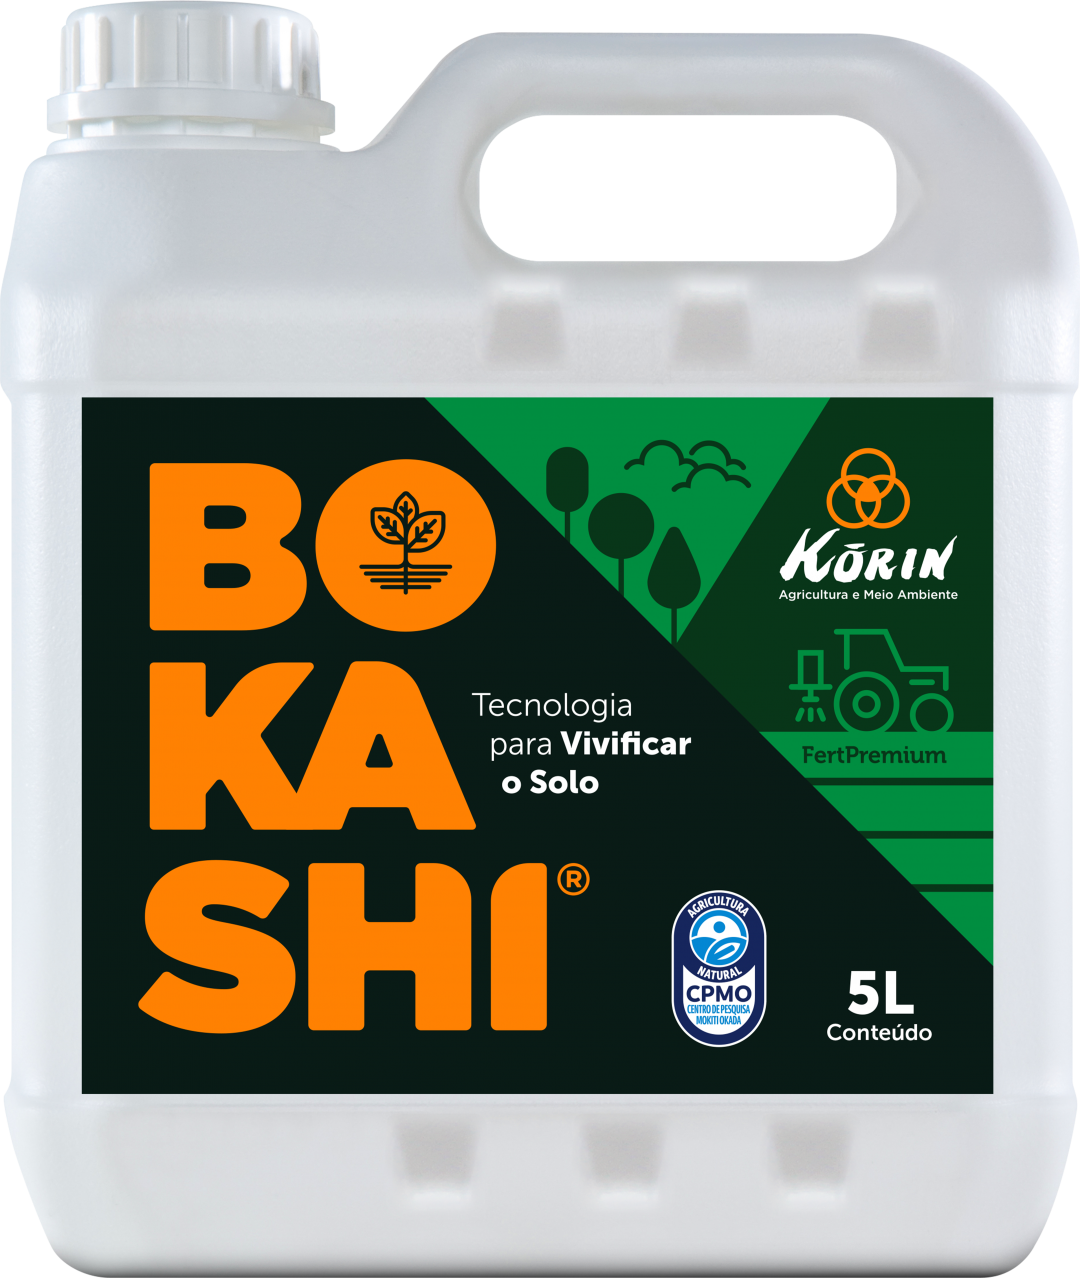 Com 30 anos de tradição e pioneira dos insumos biológicos no Brasil, o BOKASHI propicia equilíbrio do solo e aumento de produtividade, e volta ao nome do principal produto da Korin Agricultura e Meio Ambiente  